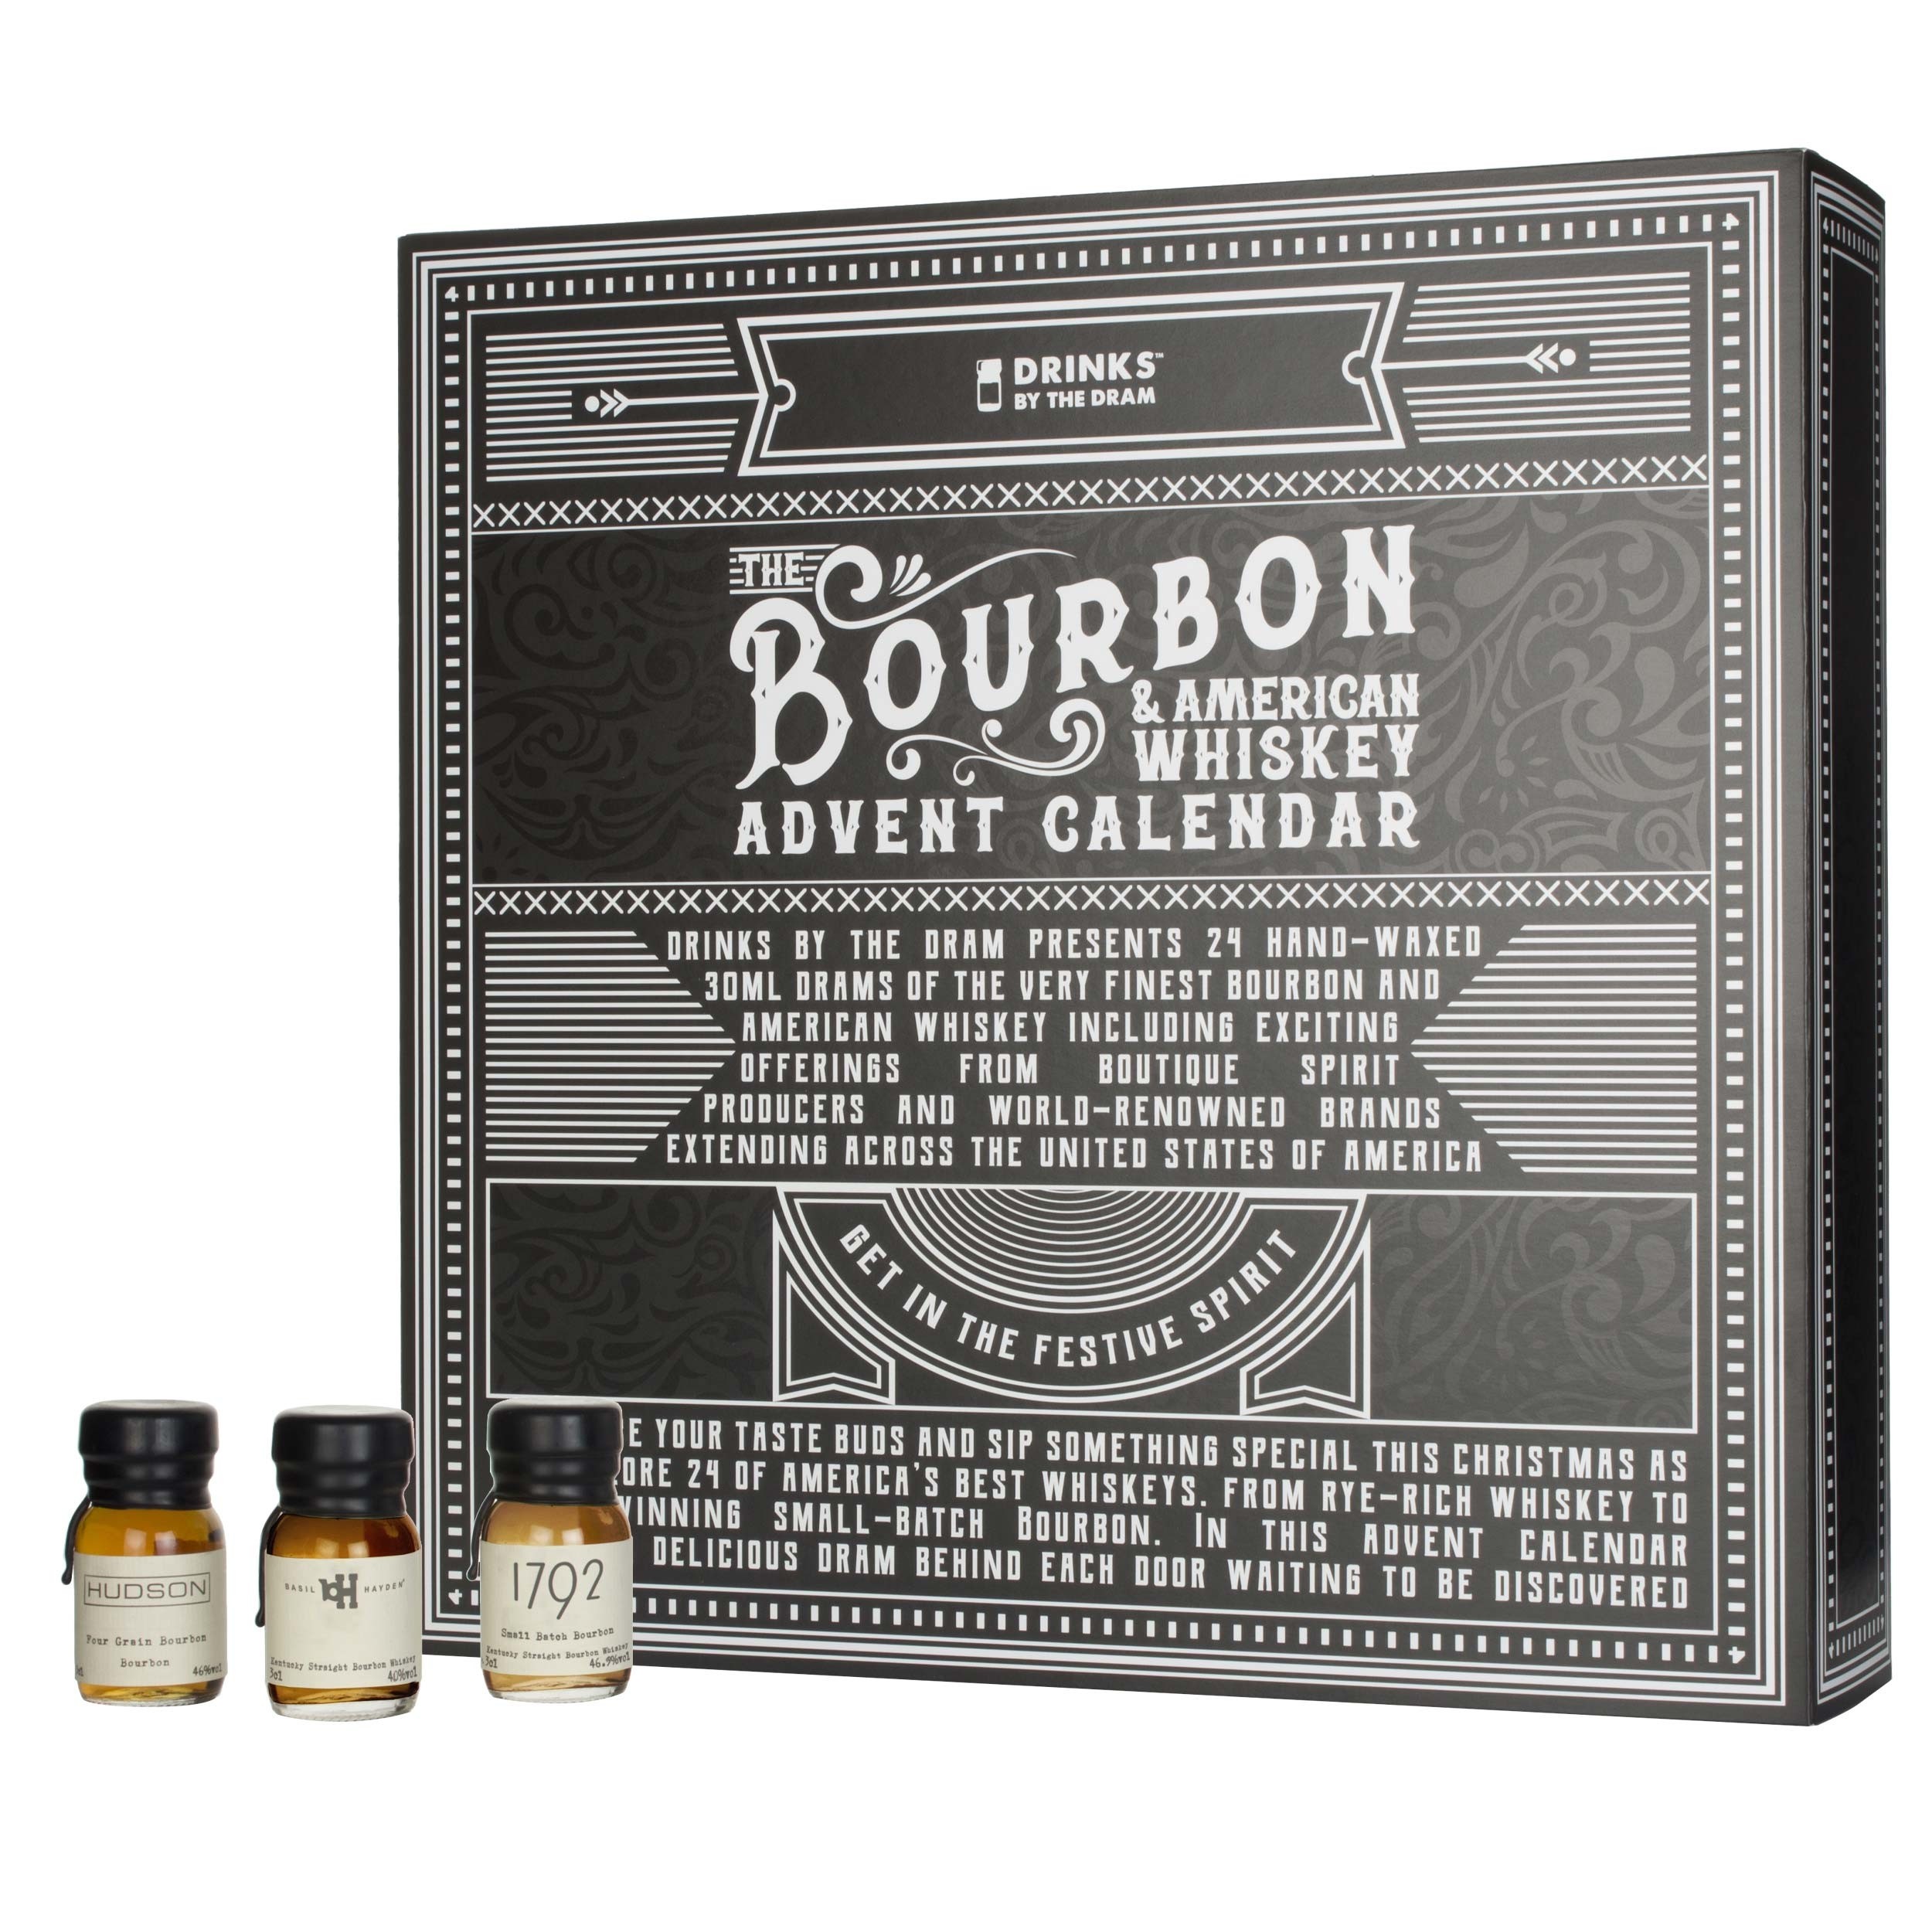 Rare Bourbon Release Calendar